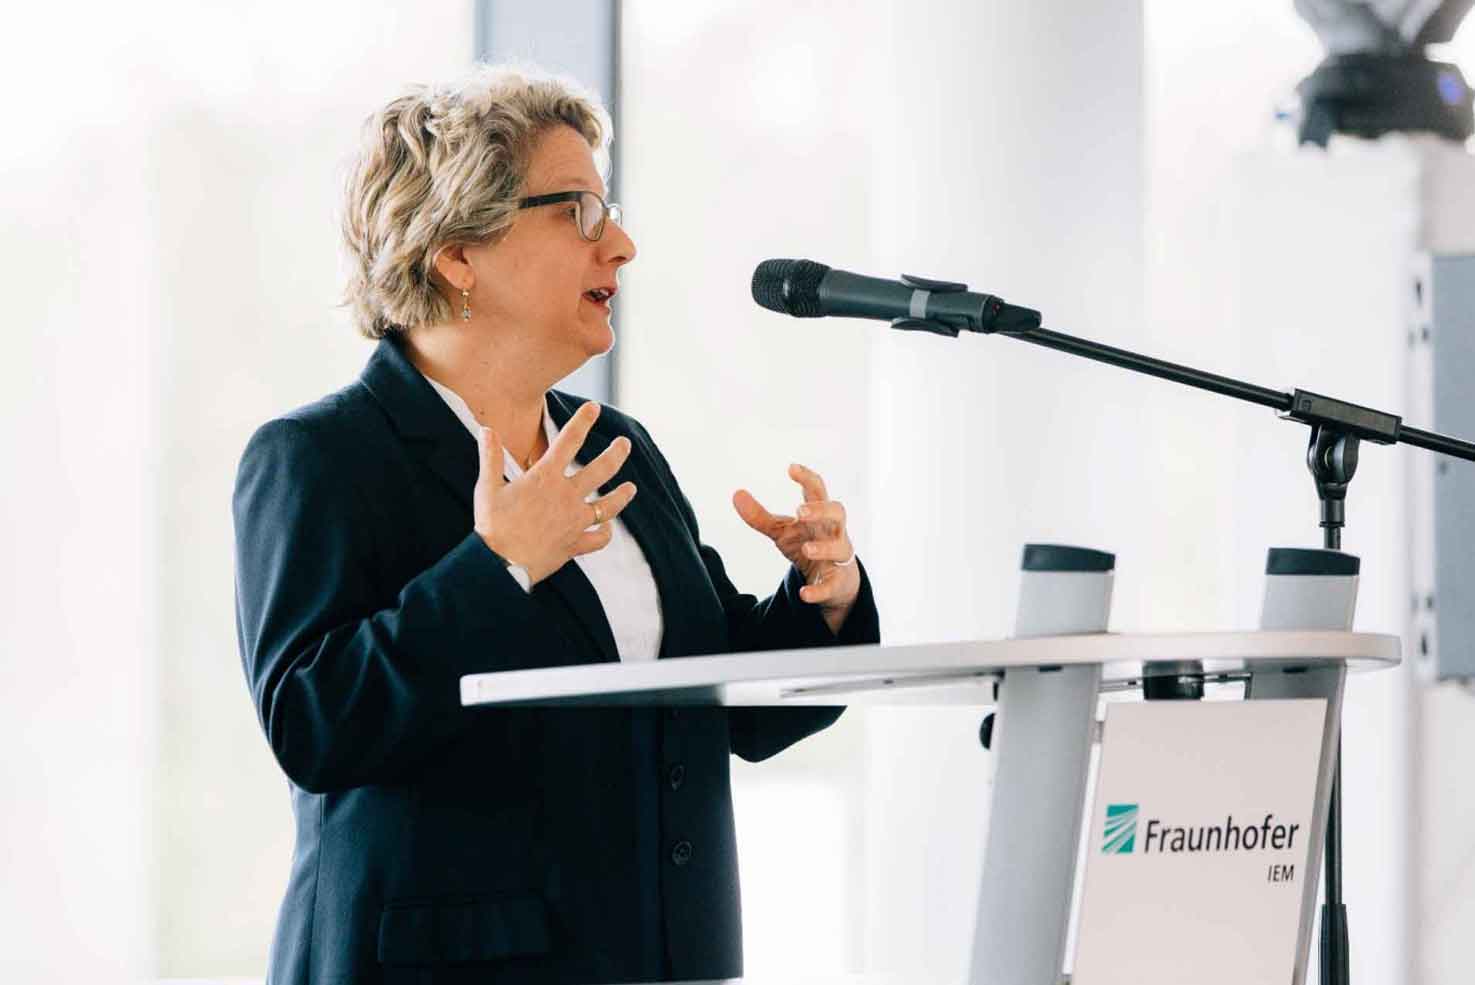 Als Projektgruppe des Fraunhofer-Instituts für Produktionstechnologie IPT in Aachen war das Fraunhofer IEM im Jahr 2011 gestartet. Das Land NRW hat diese Kooperation mit einer Anschubfinanzierung von 8,3 Mio. Euro unterstützt und freut sich nun über das erste neugegründete Fraunhofer-Institut in NRW seit über 20 Jahren. 